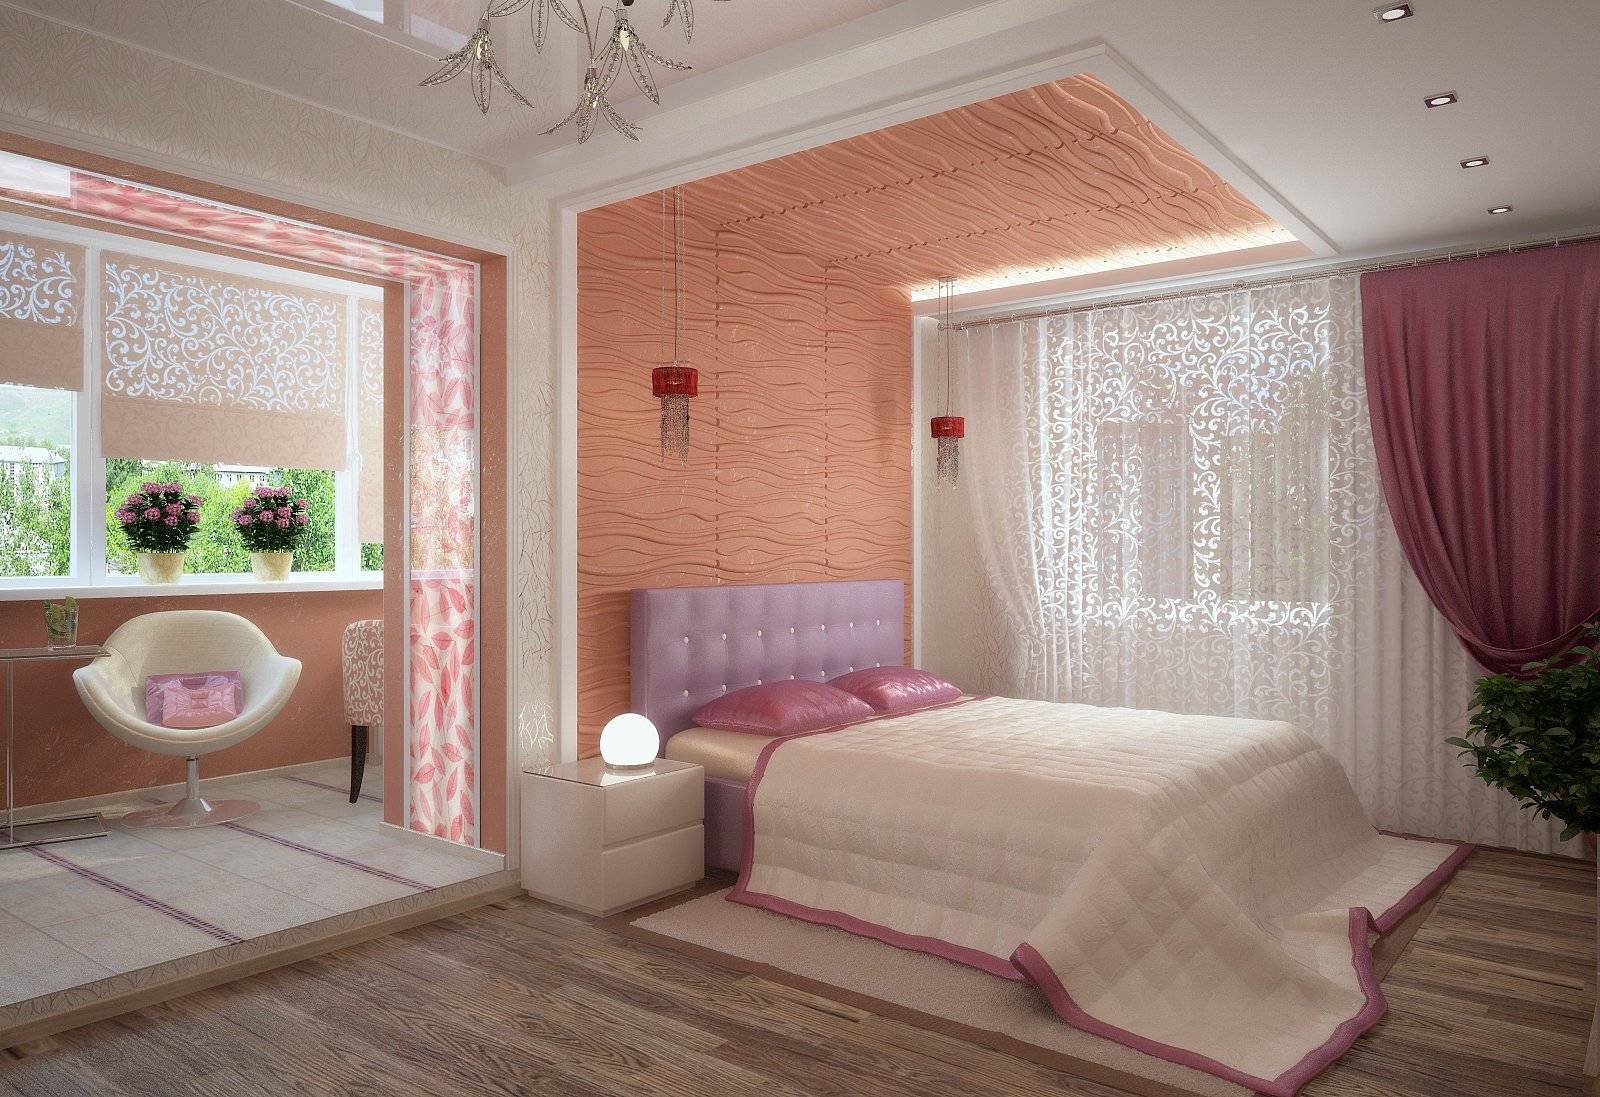 Спальня по фен шуй правила - как обустроить самый интимный уголок квартиры